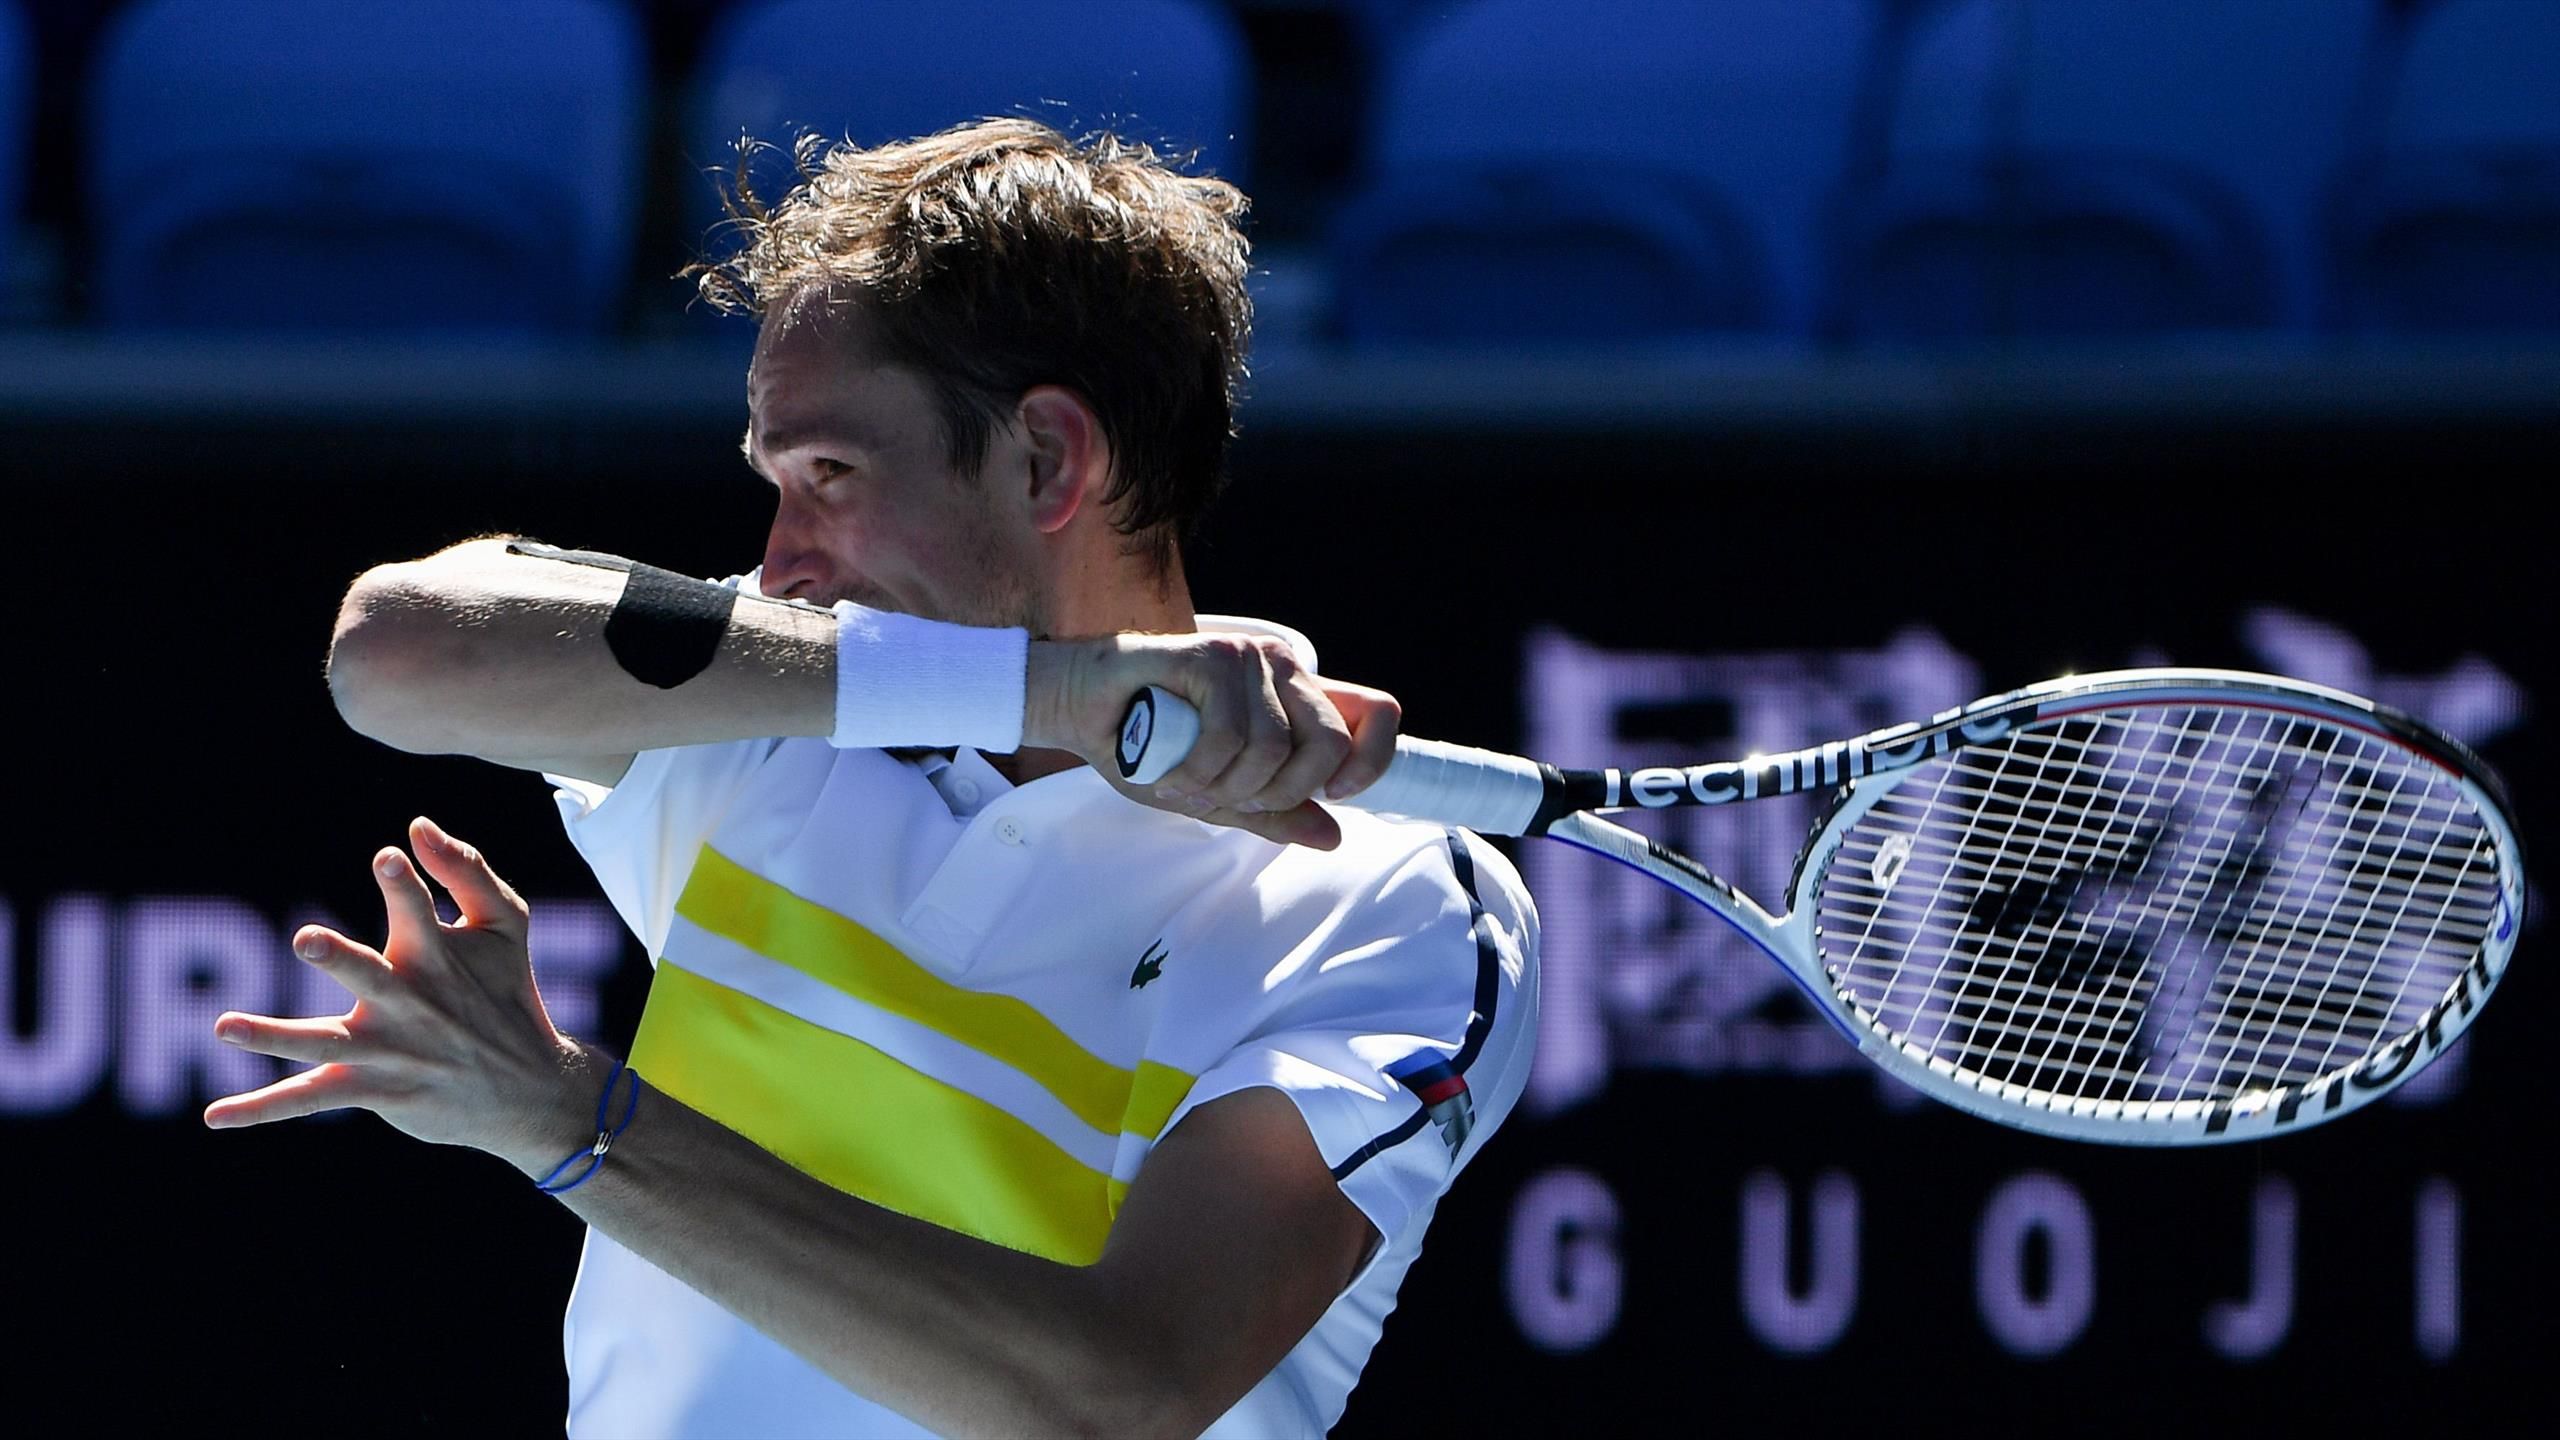 Australian Open Medvedev mit gelungenem Auftakt - Bautista Agut und Goffin scheitern früh